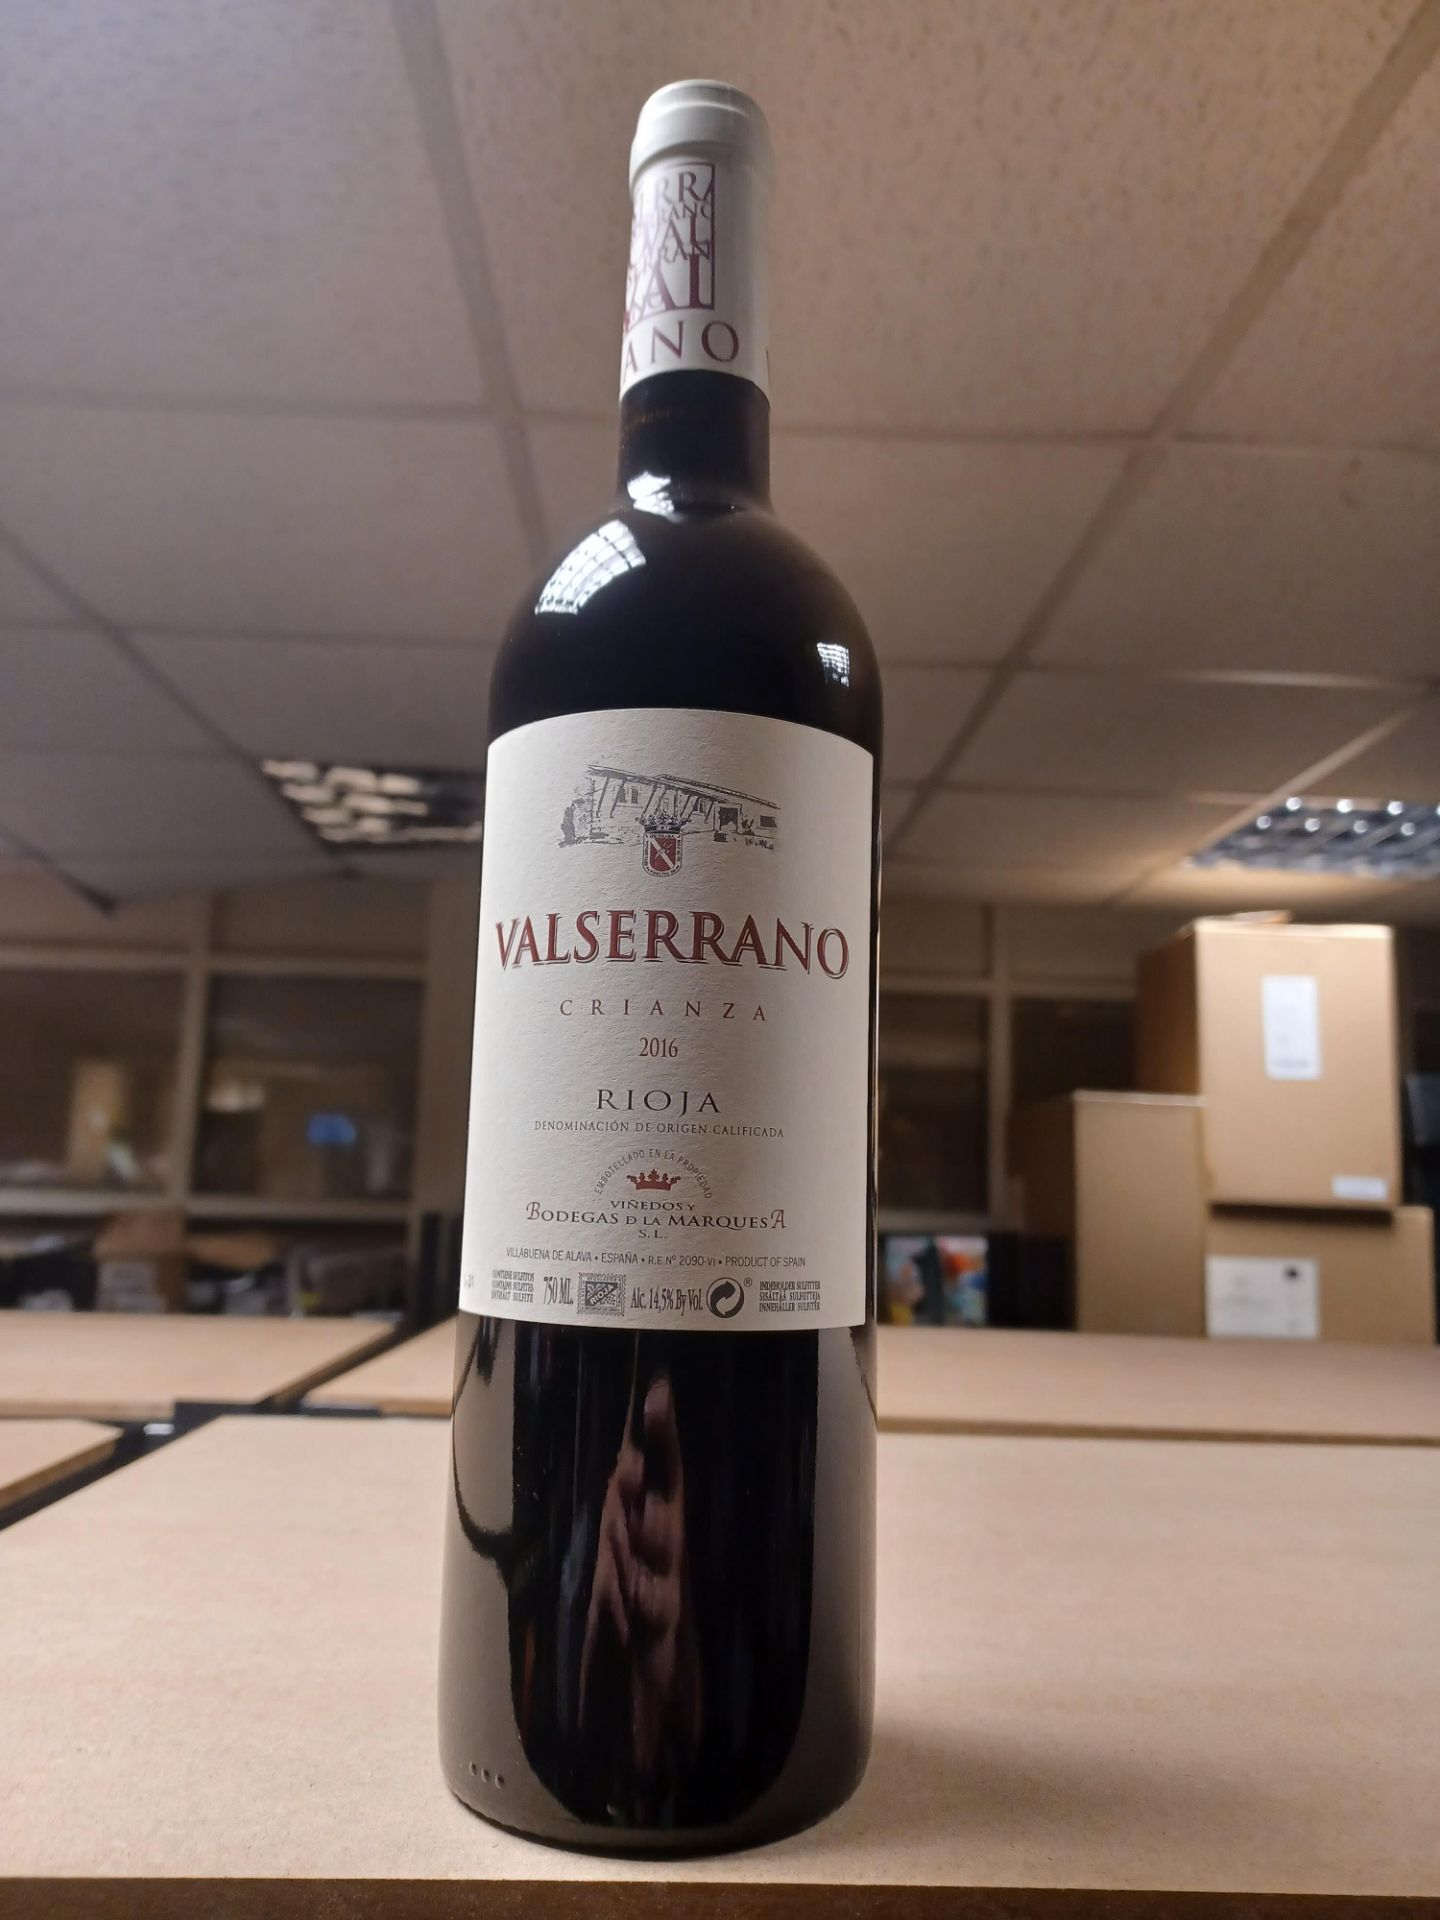 6 x Valserrano Rioja Crianzo 2016, Bodegas De La Marquesa RRP £21.00 each - EBR